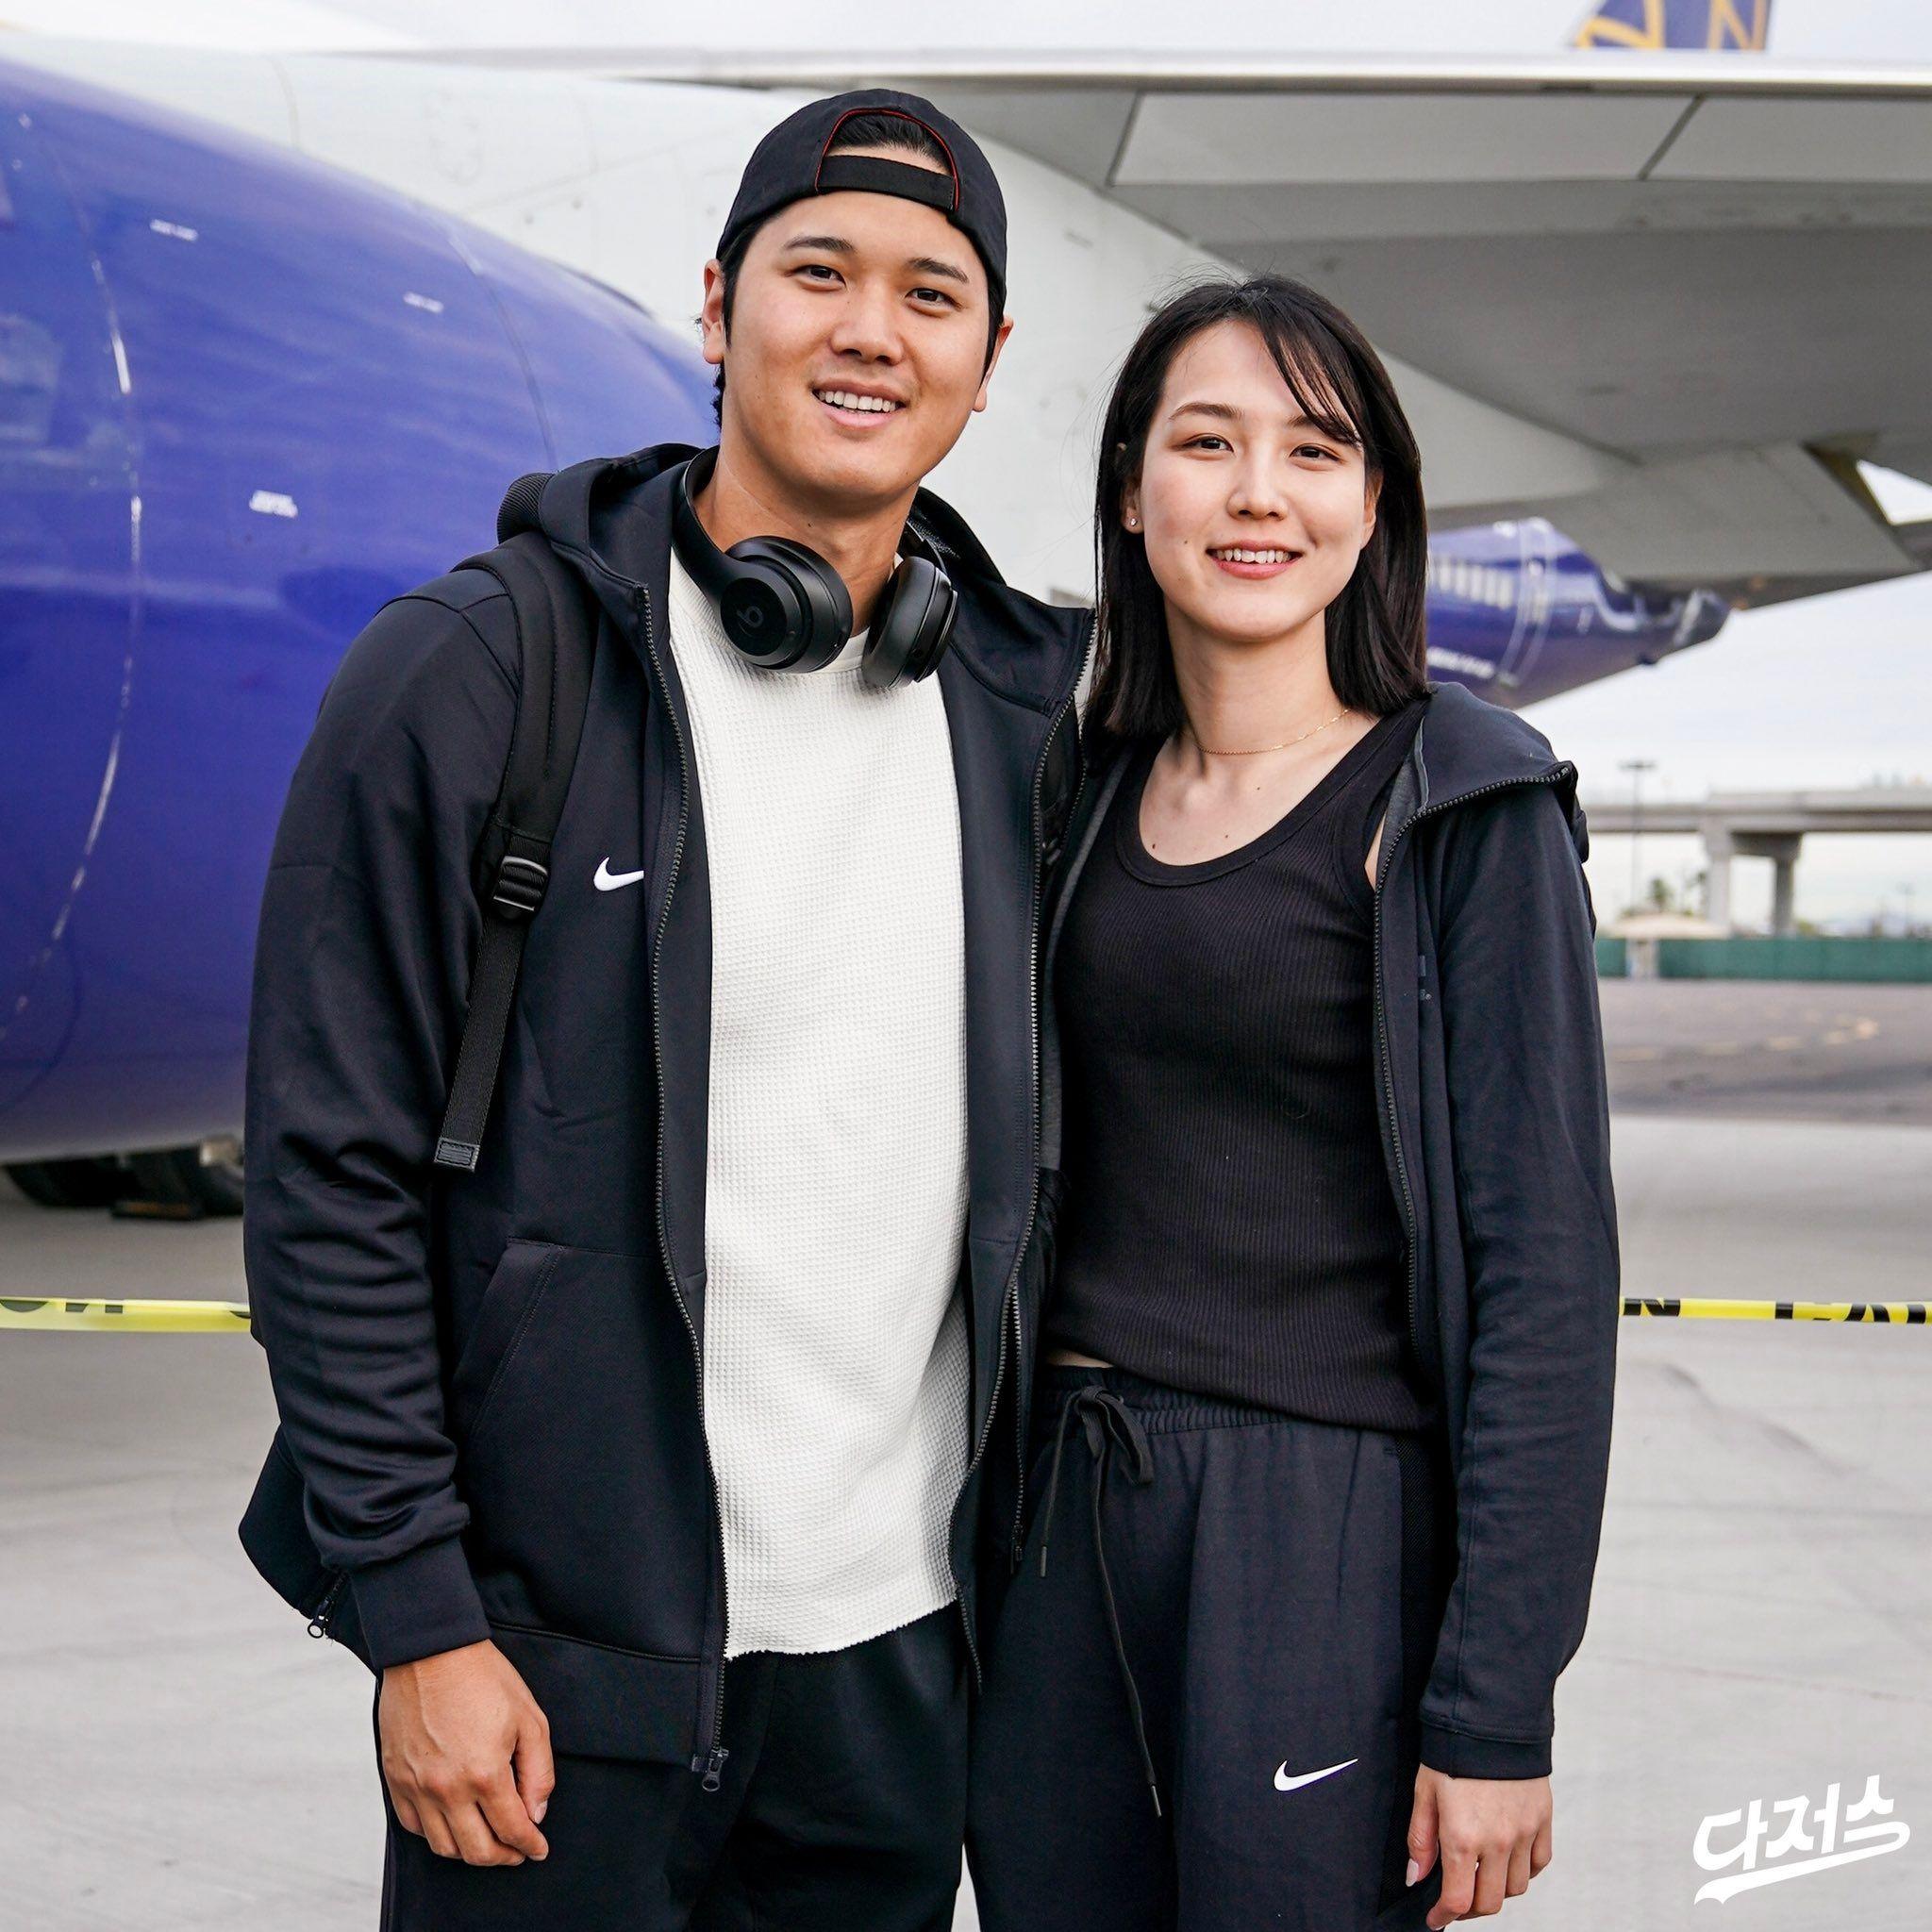 韓国に到着したドジャース大谷翔平選手と「妻」を写真で見る